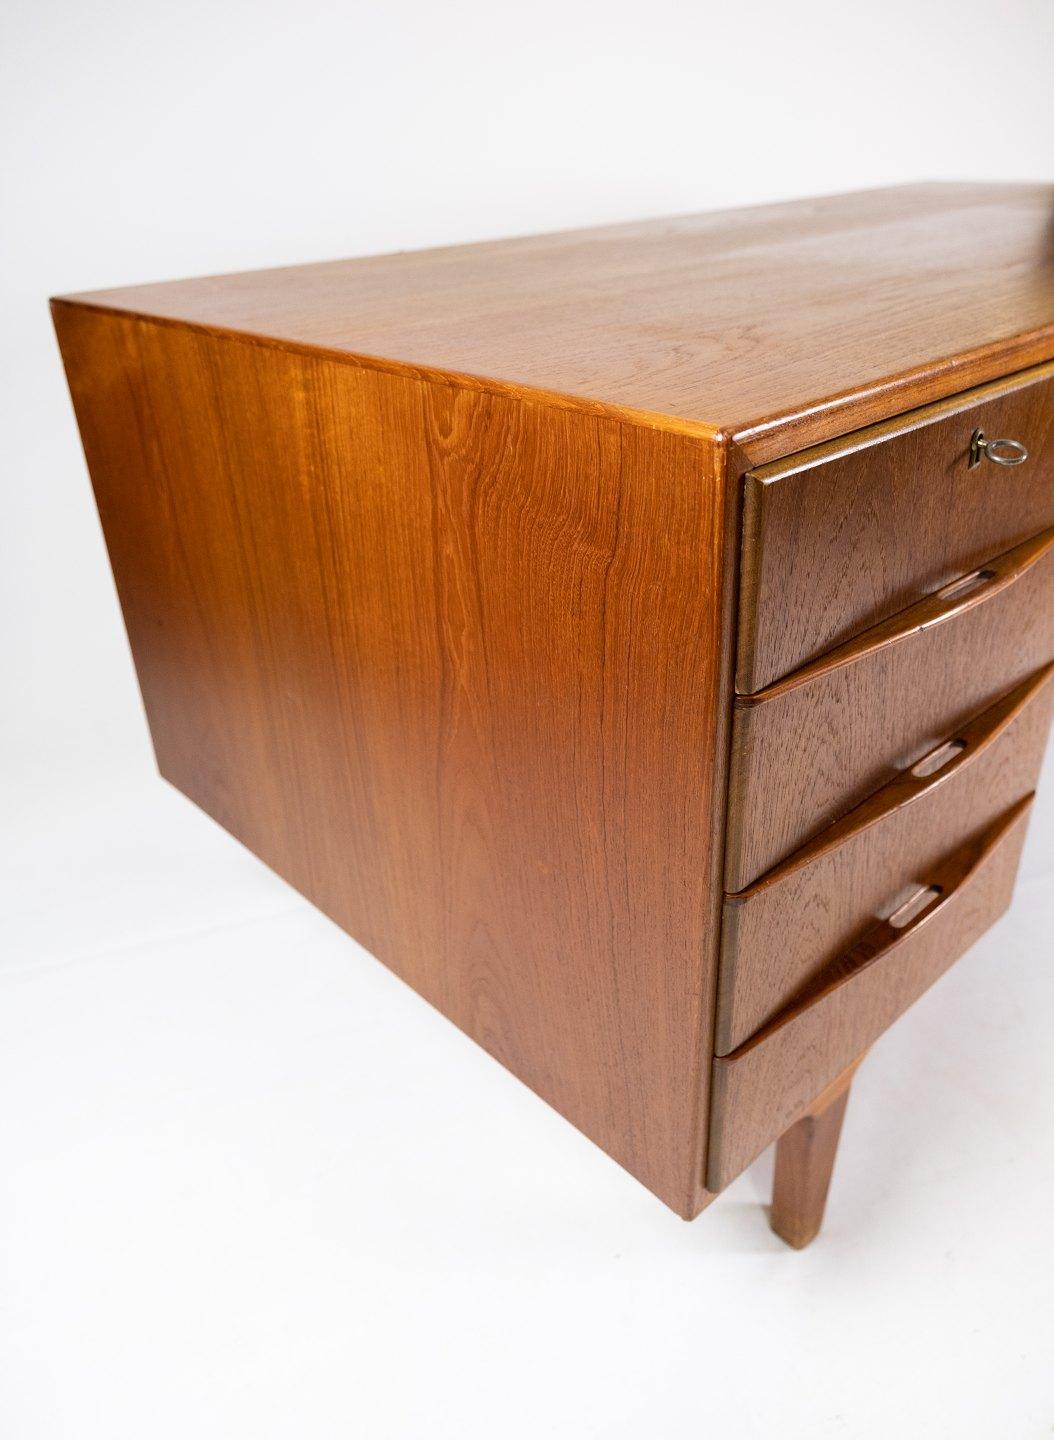 Ce bureau est une pièce intemporelle du design danois des années 1960, en bois de teck. Il présente une esthétique simple et élégante qui s'adapte parfaitement aux intérieurs modernes et vintage.

Le bureau est solidement construit et dispose d'un